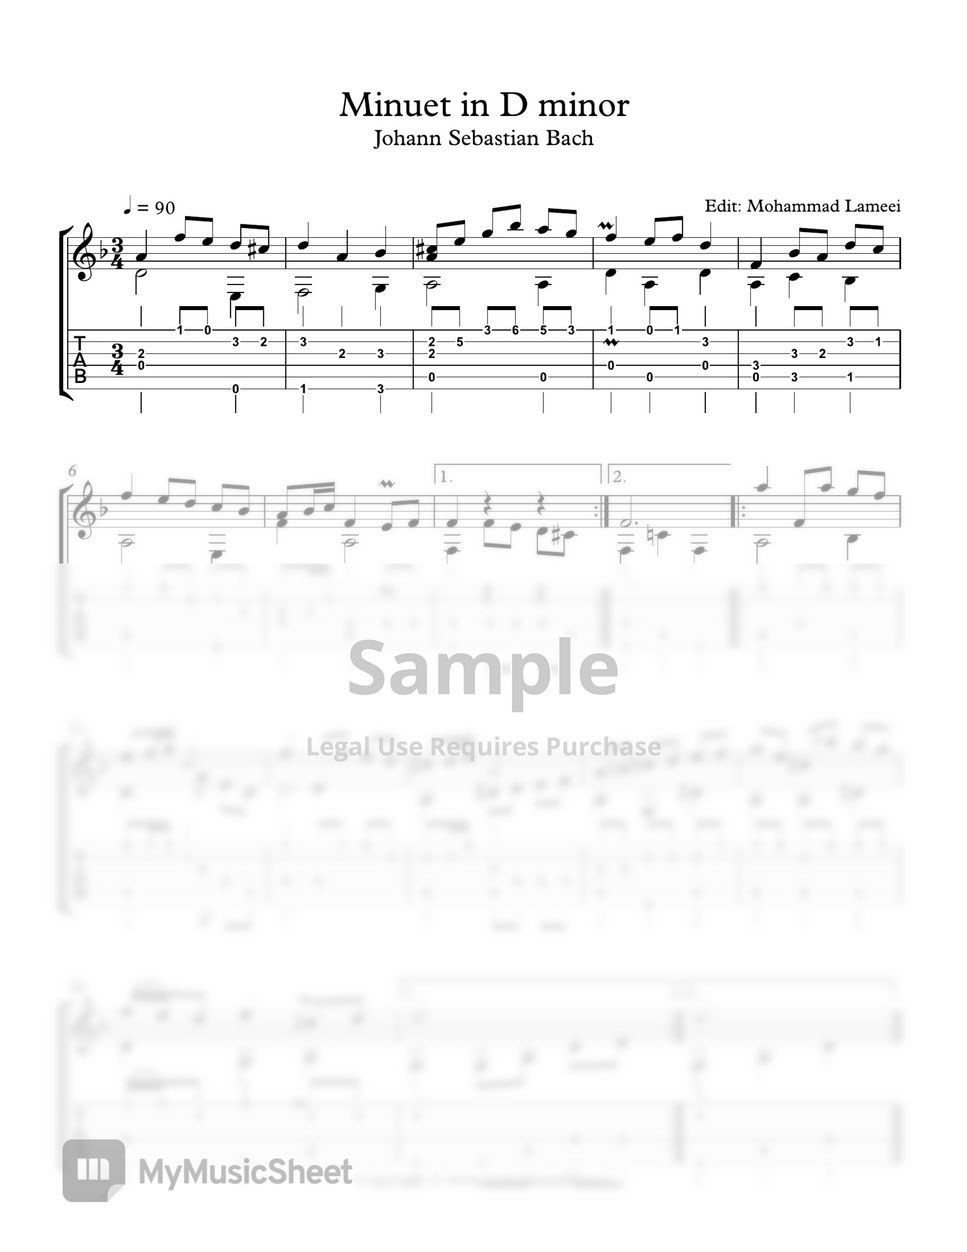 Johann Sebastian Bach - Minuet in D minor by Mohammad Lameei